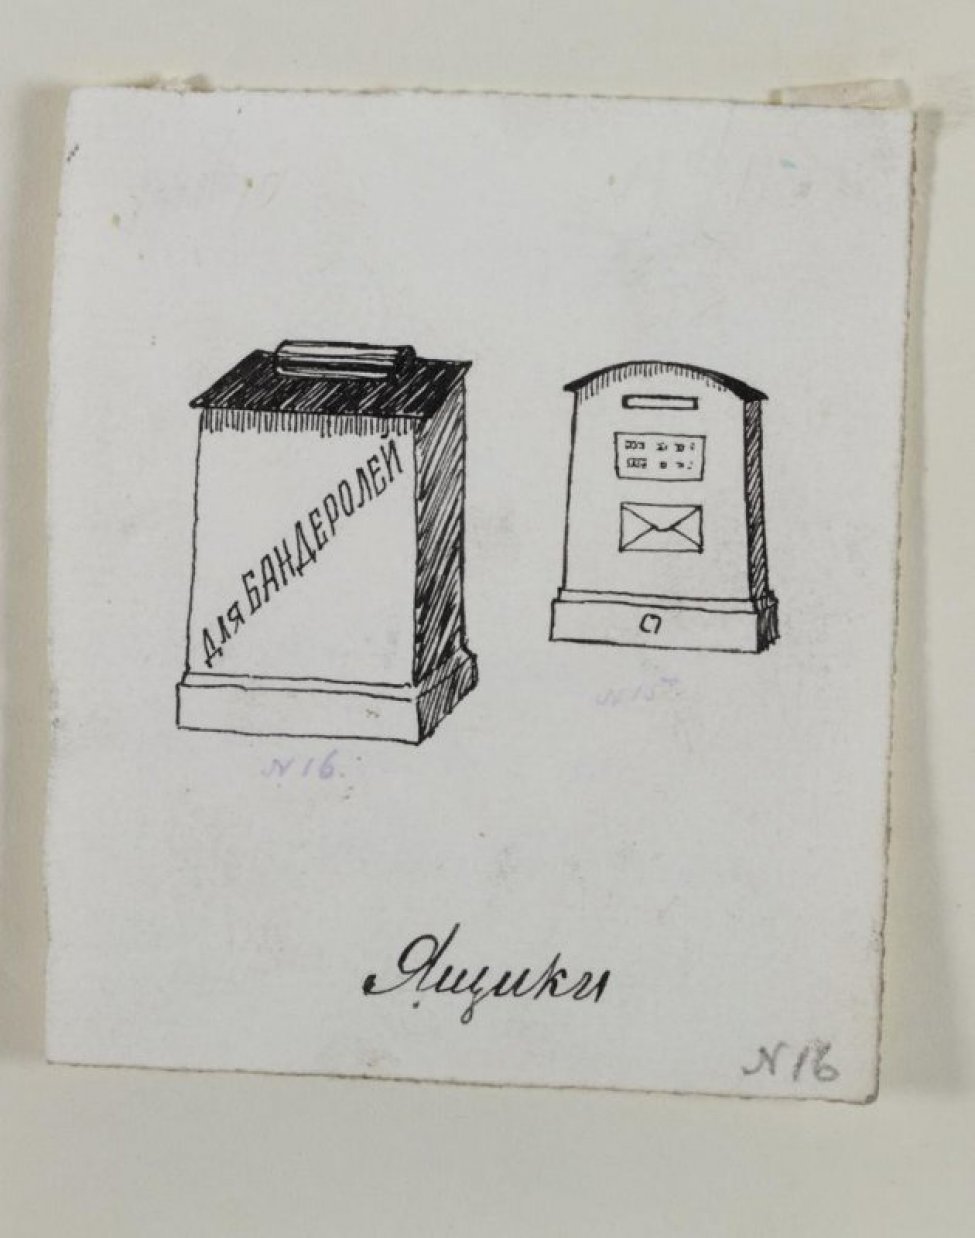 Изображены два почтовых ящика. Слева - большой ящик, на нем написано: "Для бандеролей". Справа и более вглубь - ящик поменьше, предназначенный для писем.